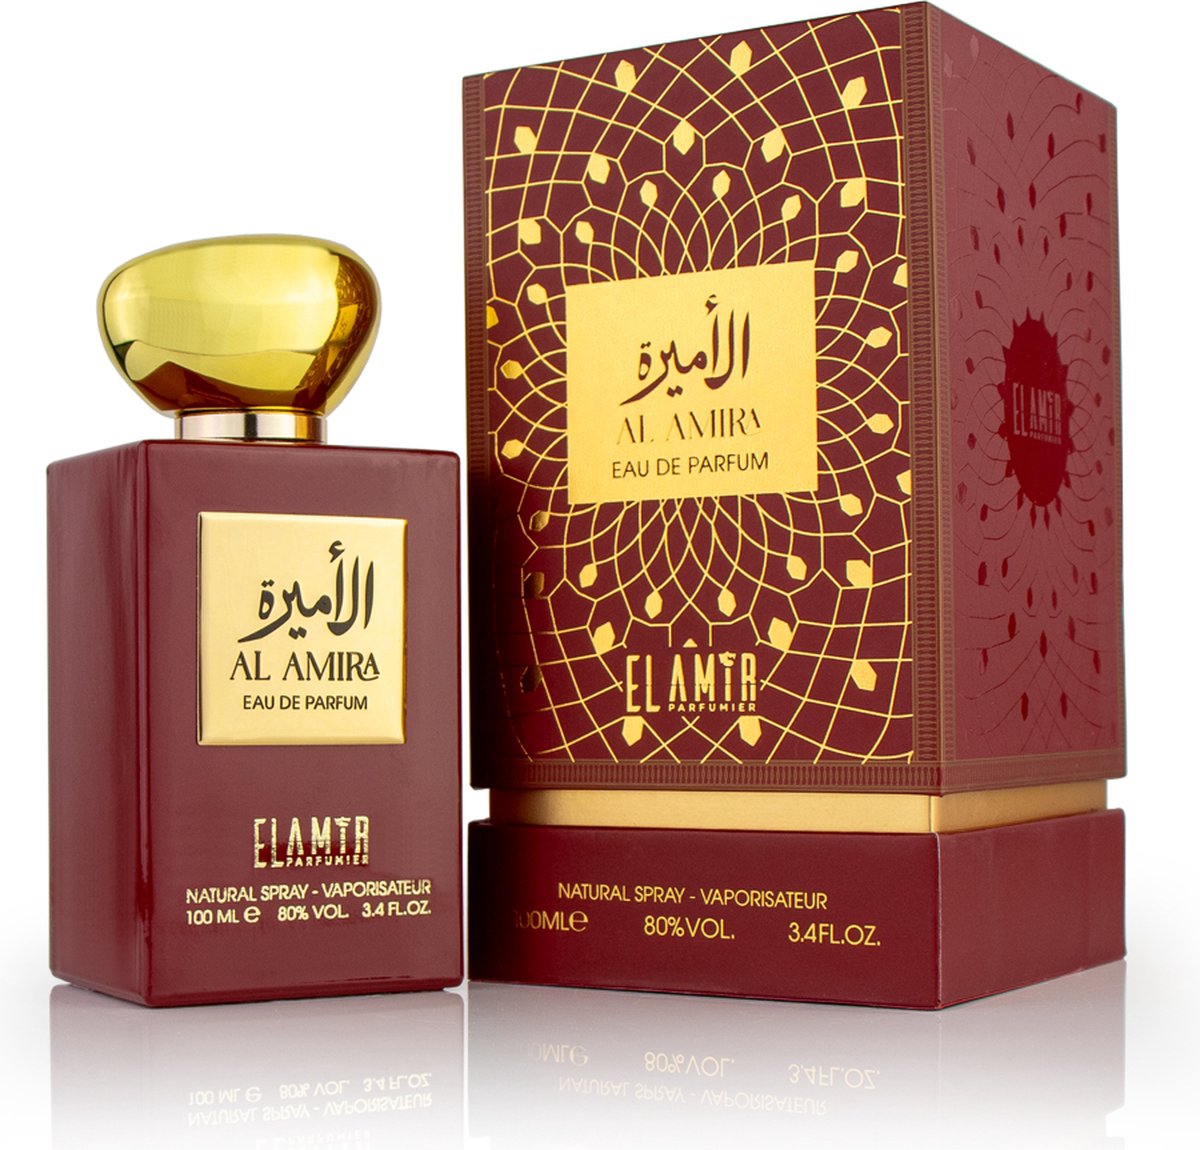 Al Amira Eau de Parfum 100 ml - Oosterse parfum - EL AMIR